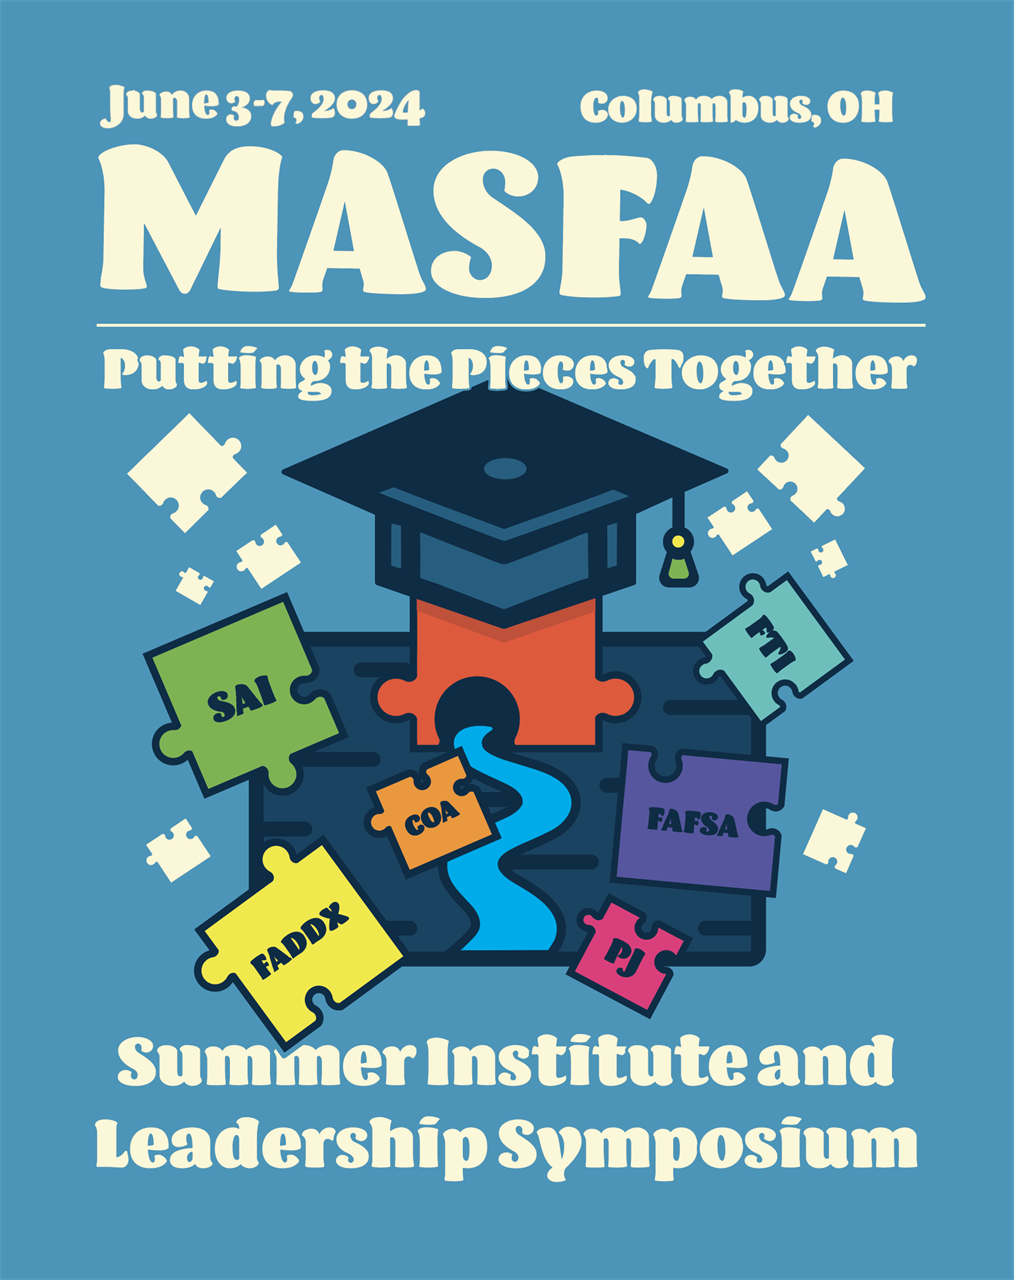 MASFAA's Summer Institute and Leadership Symposium.